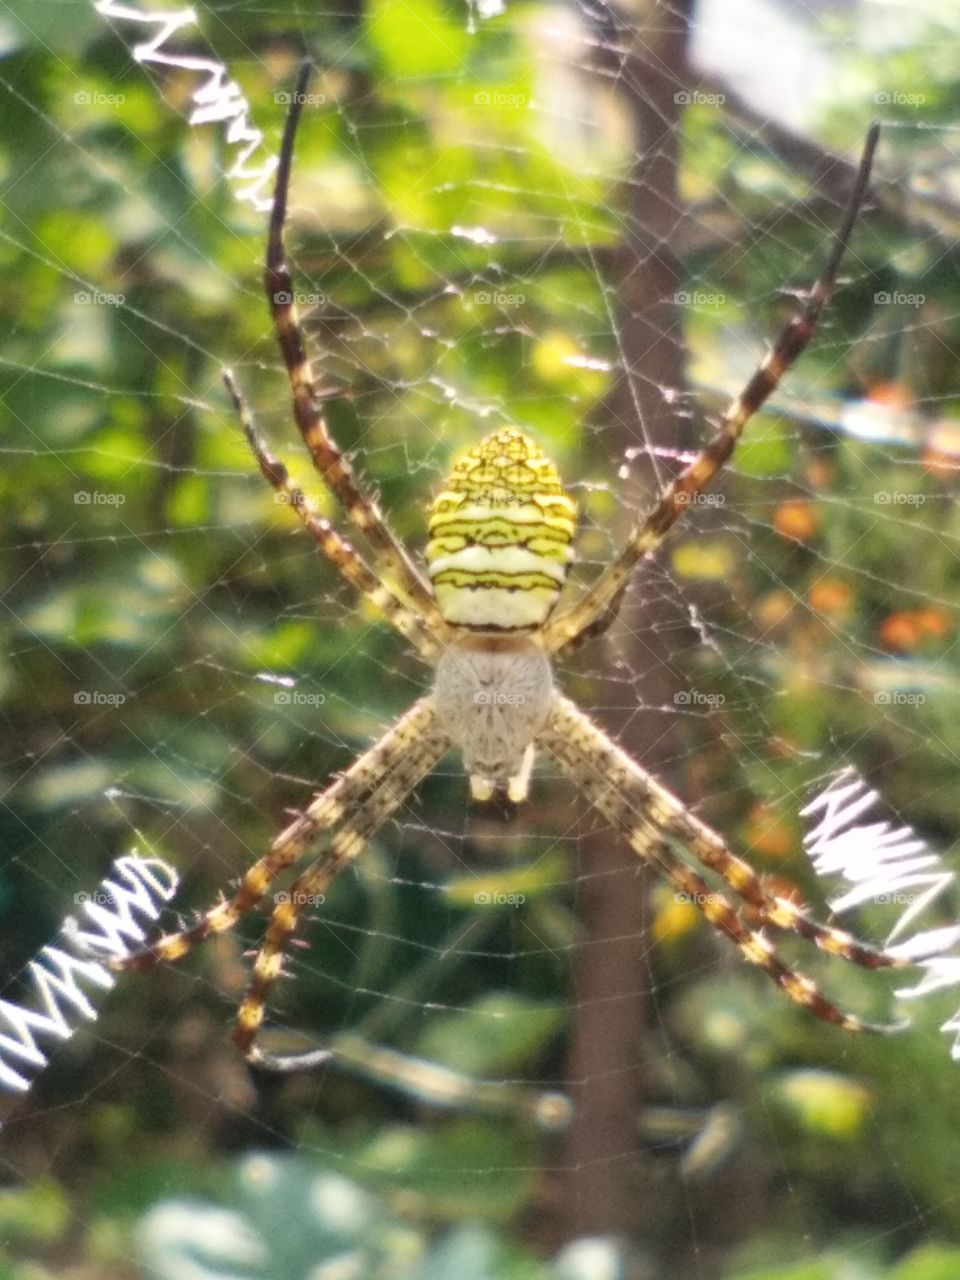 amazing peculiar large spider